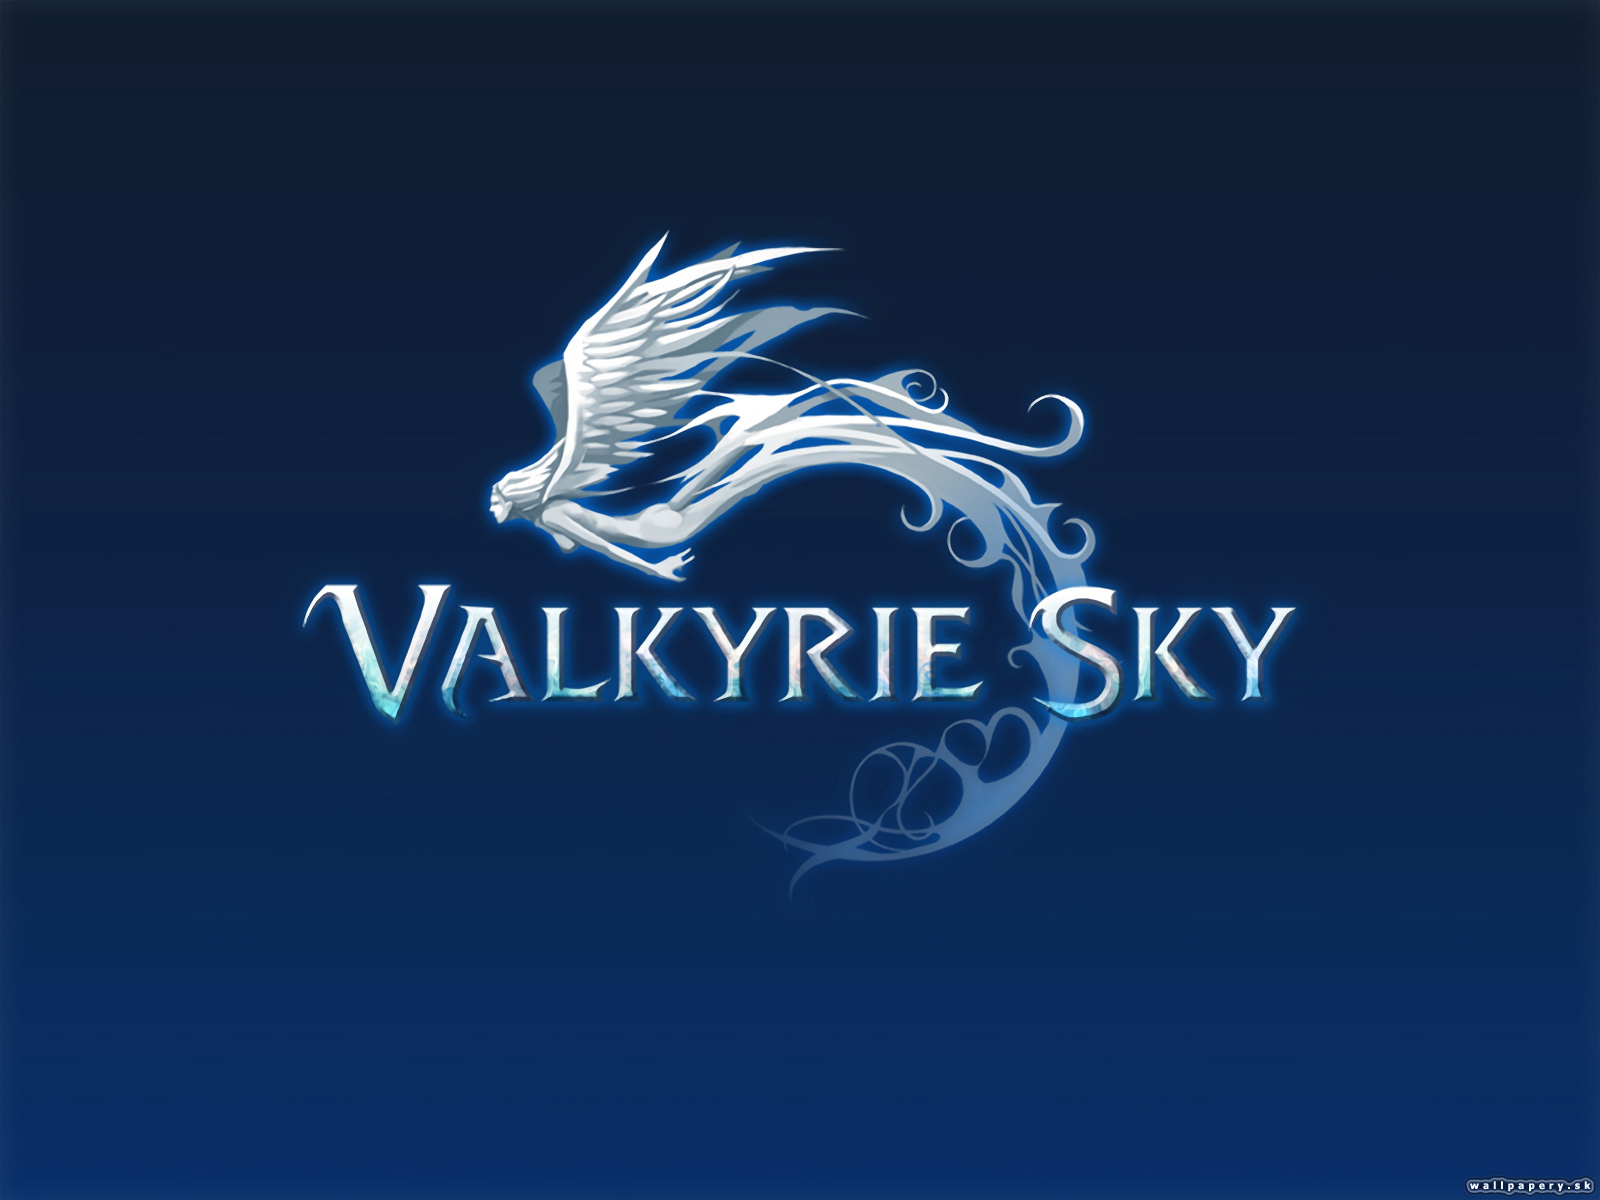 Valkyrie Sky - wallpaper 16